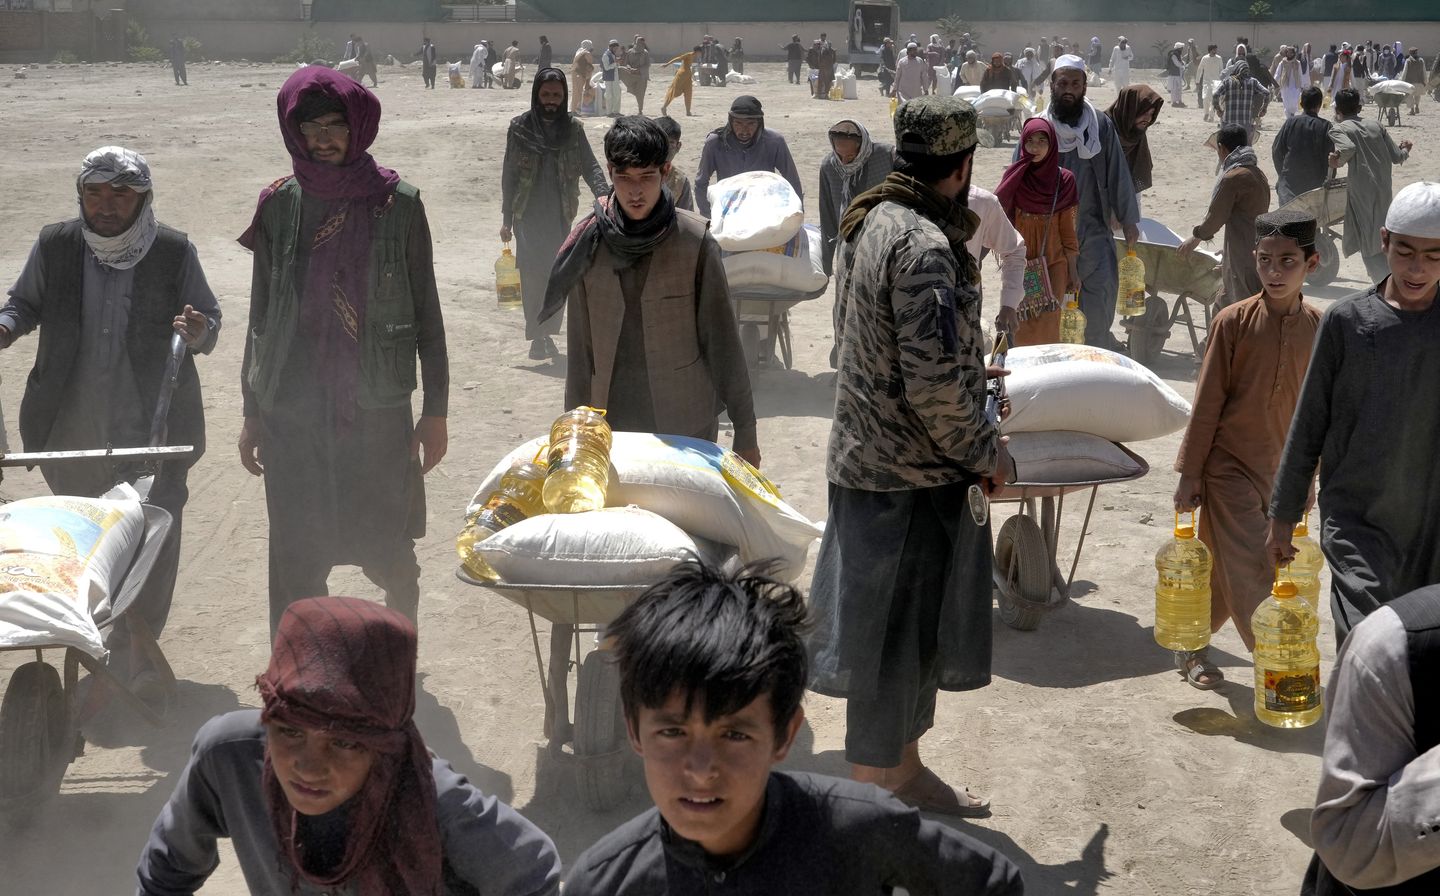 Afgan sağlık görevlisi cami patlamasında en az 18 kişinin öldüğünü, 21 kişinin yaralandığını söyledi